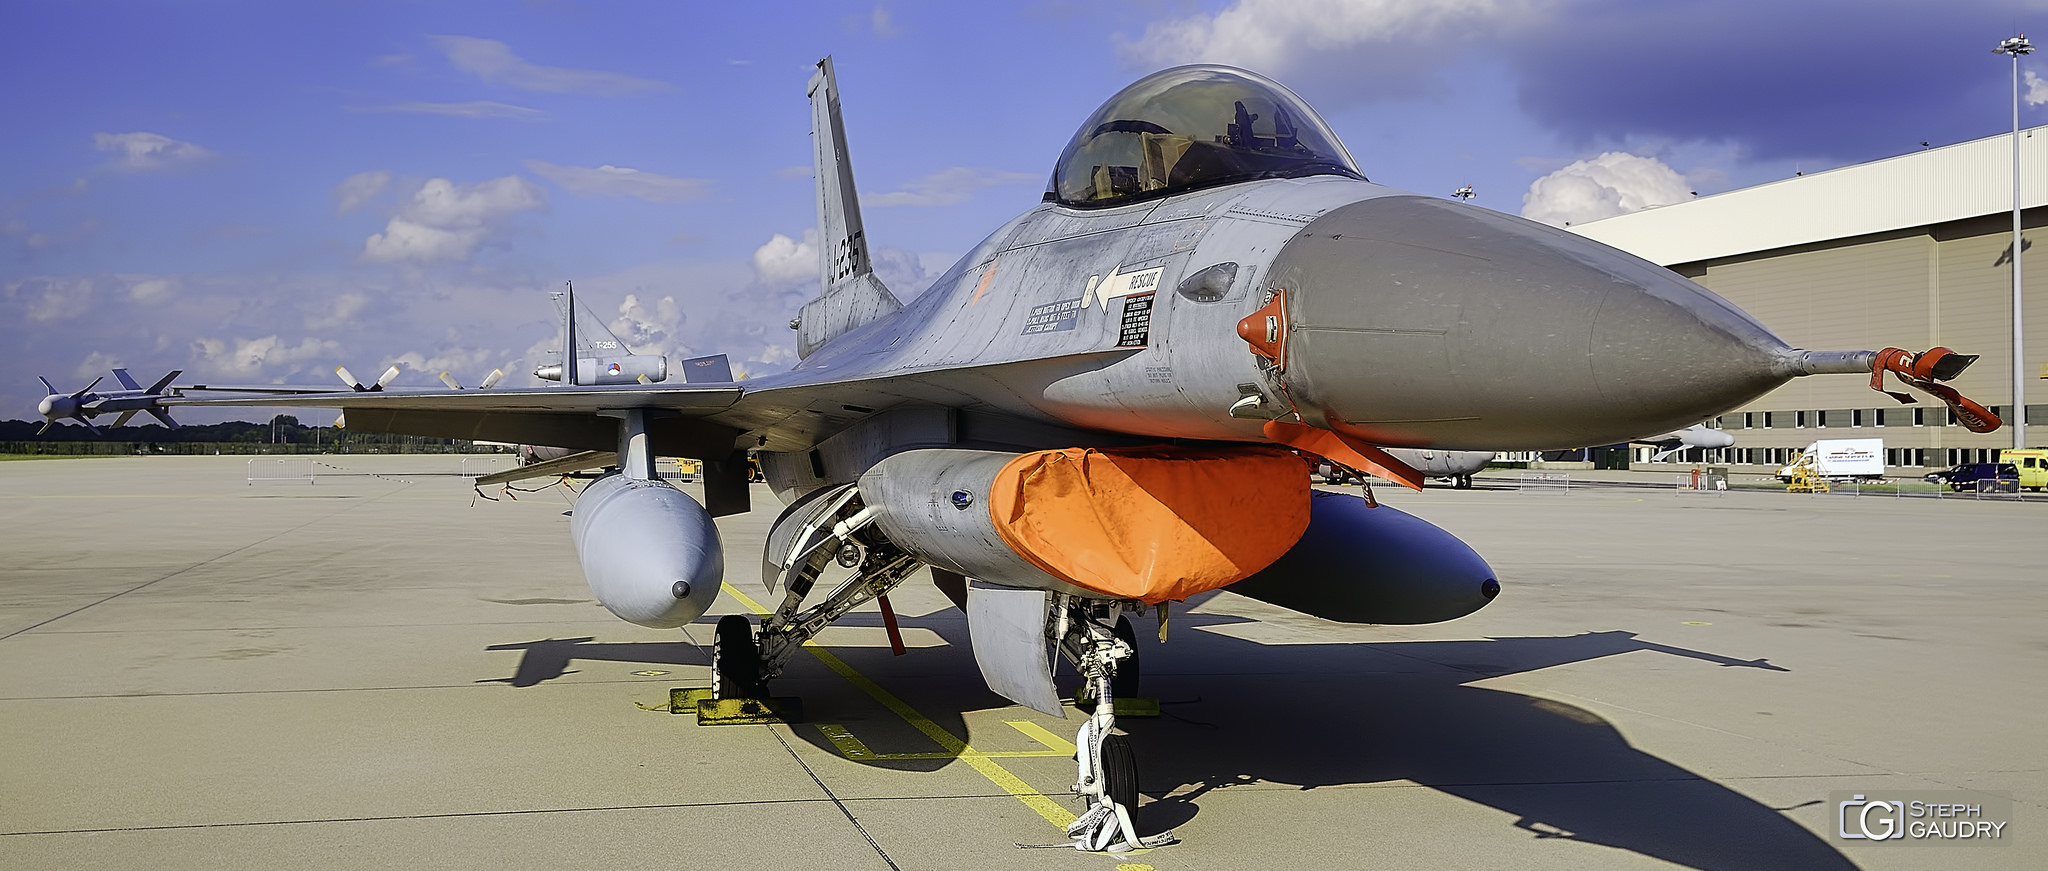 EHEH - F-16 Fighting Falcon [Cliquez pour lancer le diaporama]